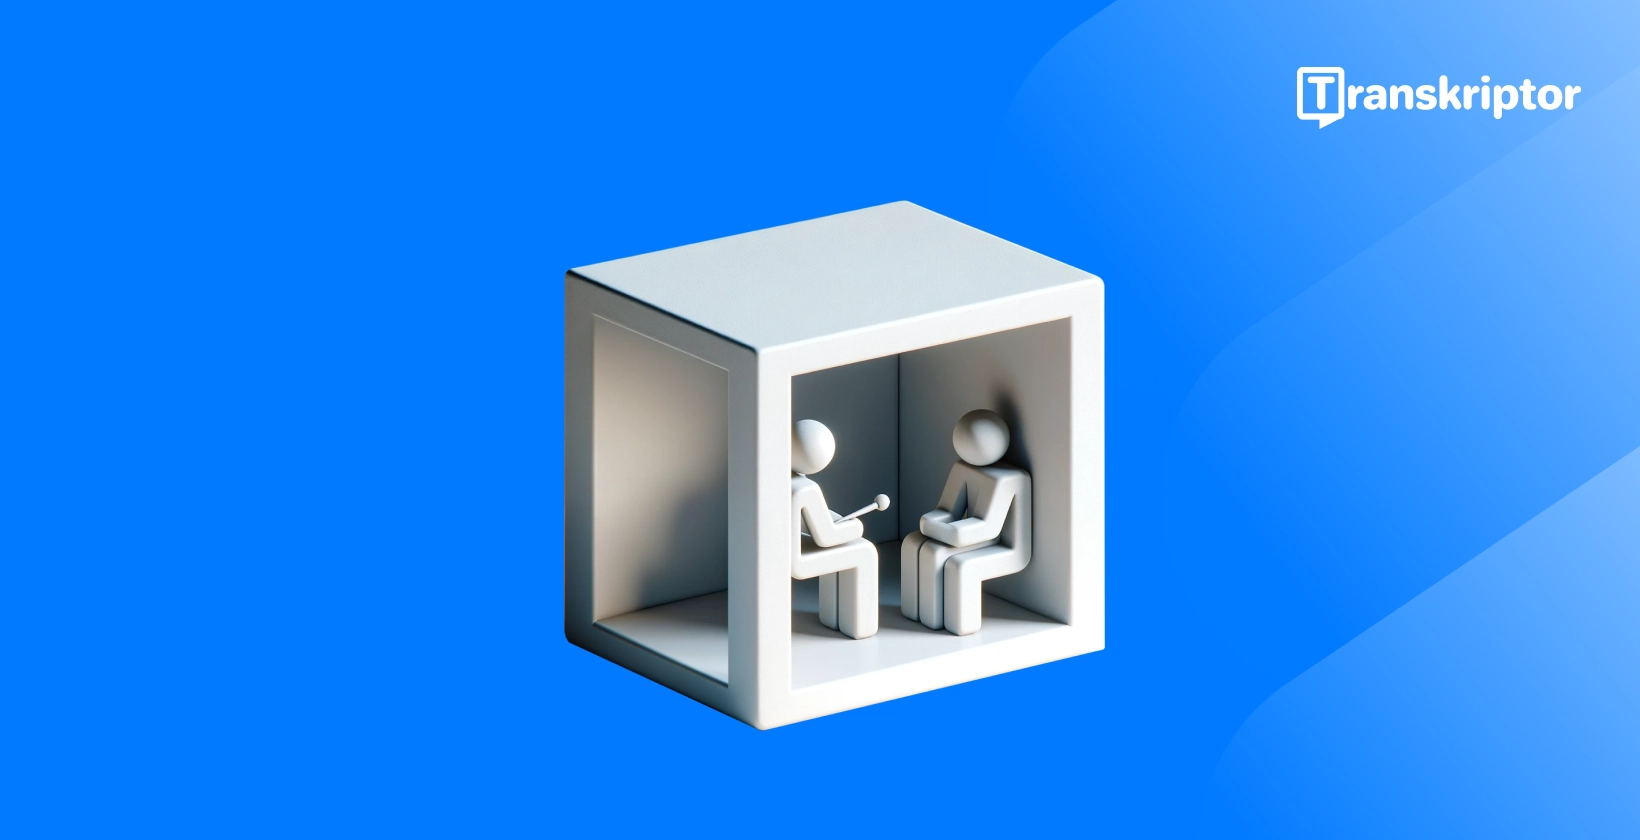 Μεταγραφή συνεντεύξεων που απεικονίζονται από 3D φιγούρες σε ένα κουτί, επισημαίνοντας τη διαδικασία συνέντευξης για λόγους σαφήνειας.